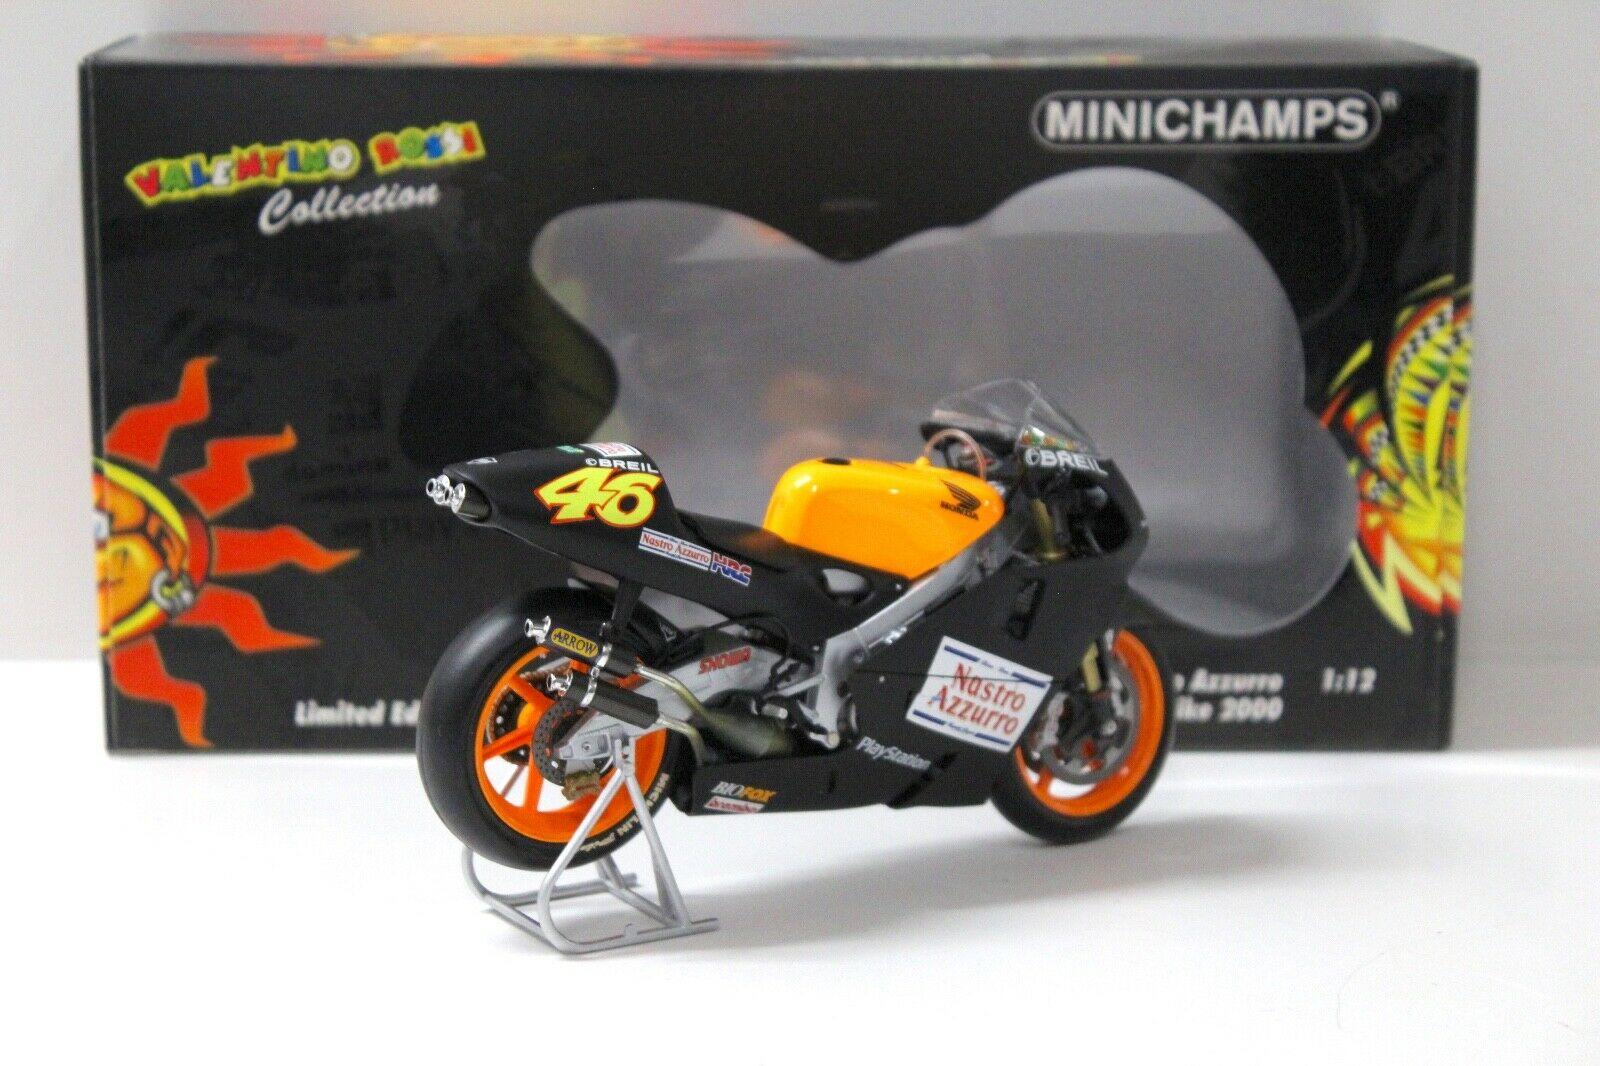 1:12 Minichamps Honda NSR 500 V.Rossi Test Bike 2000